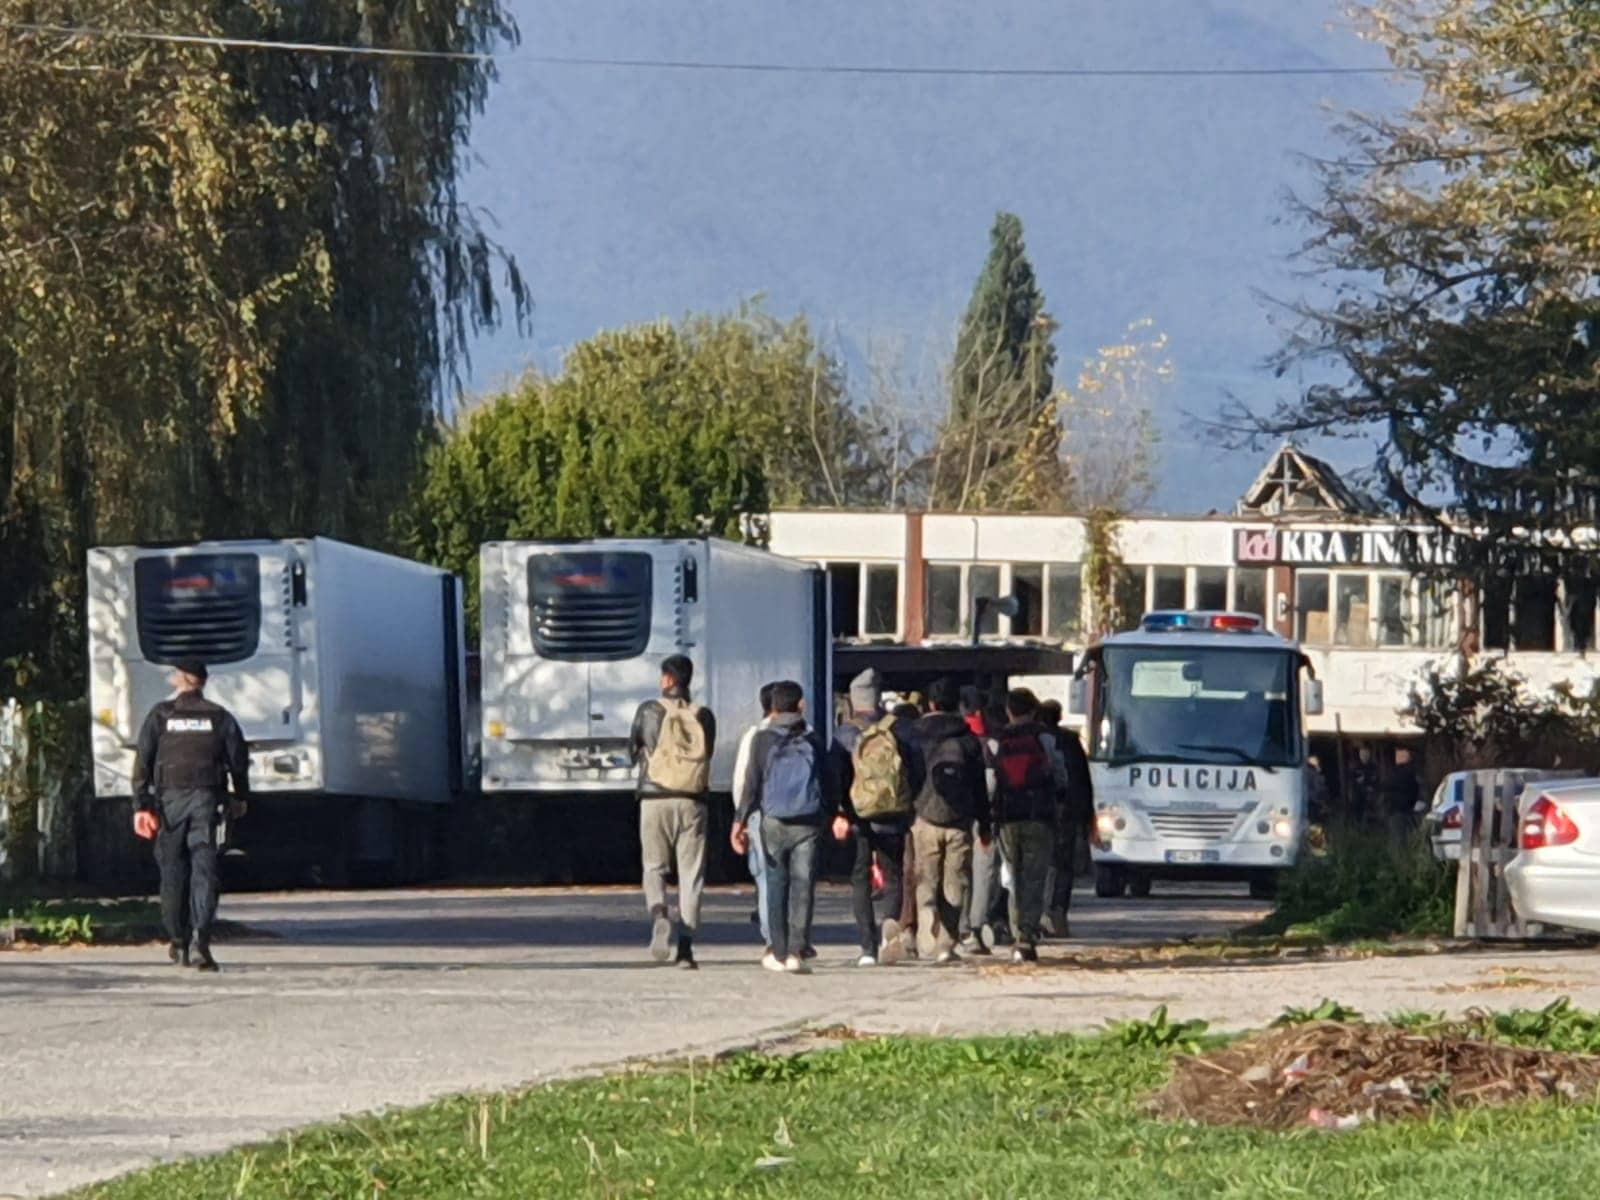 Policija dovezla nove migrante - Avaz